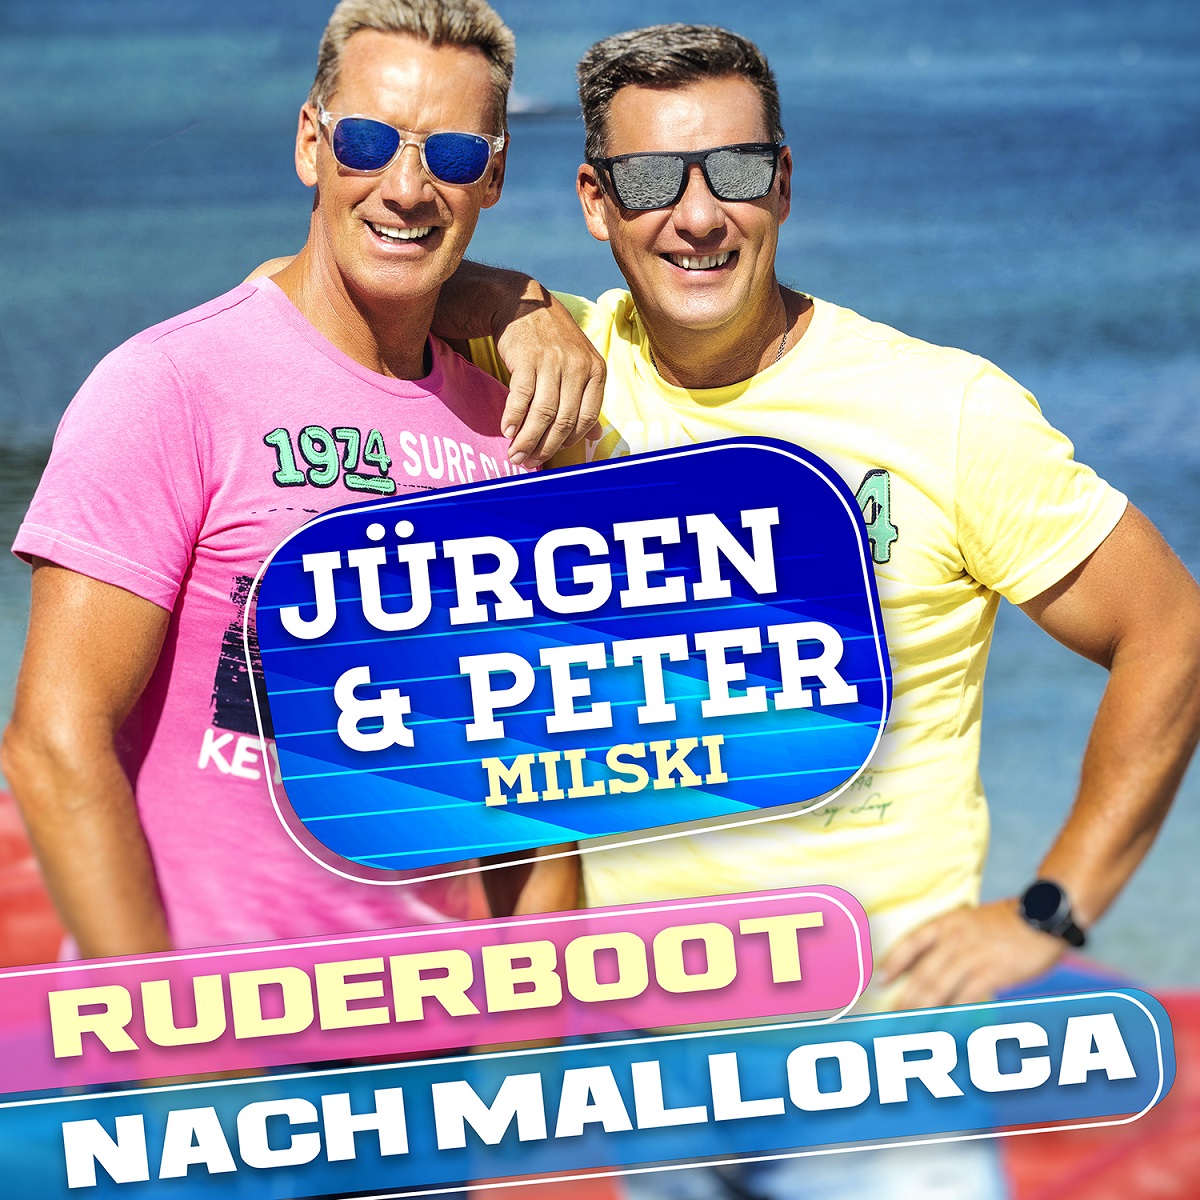 Jürgen & Peter Milski - Ruderboot nach Mallorca 